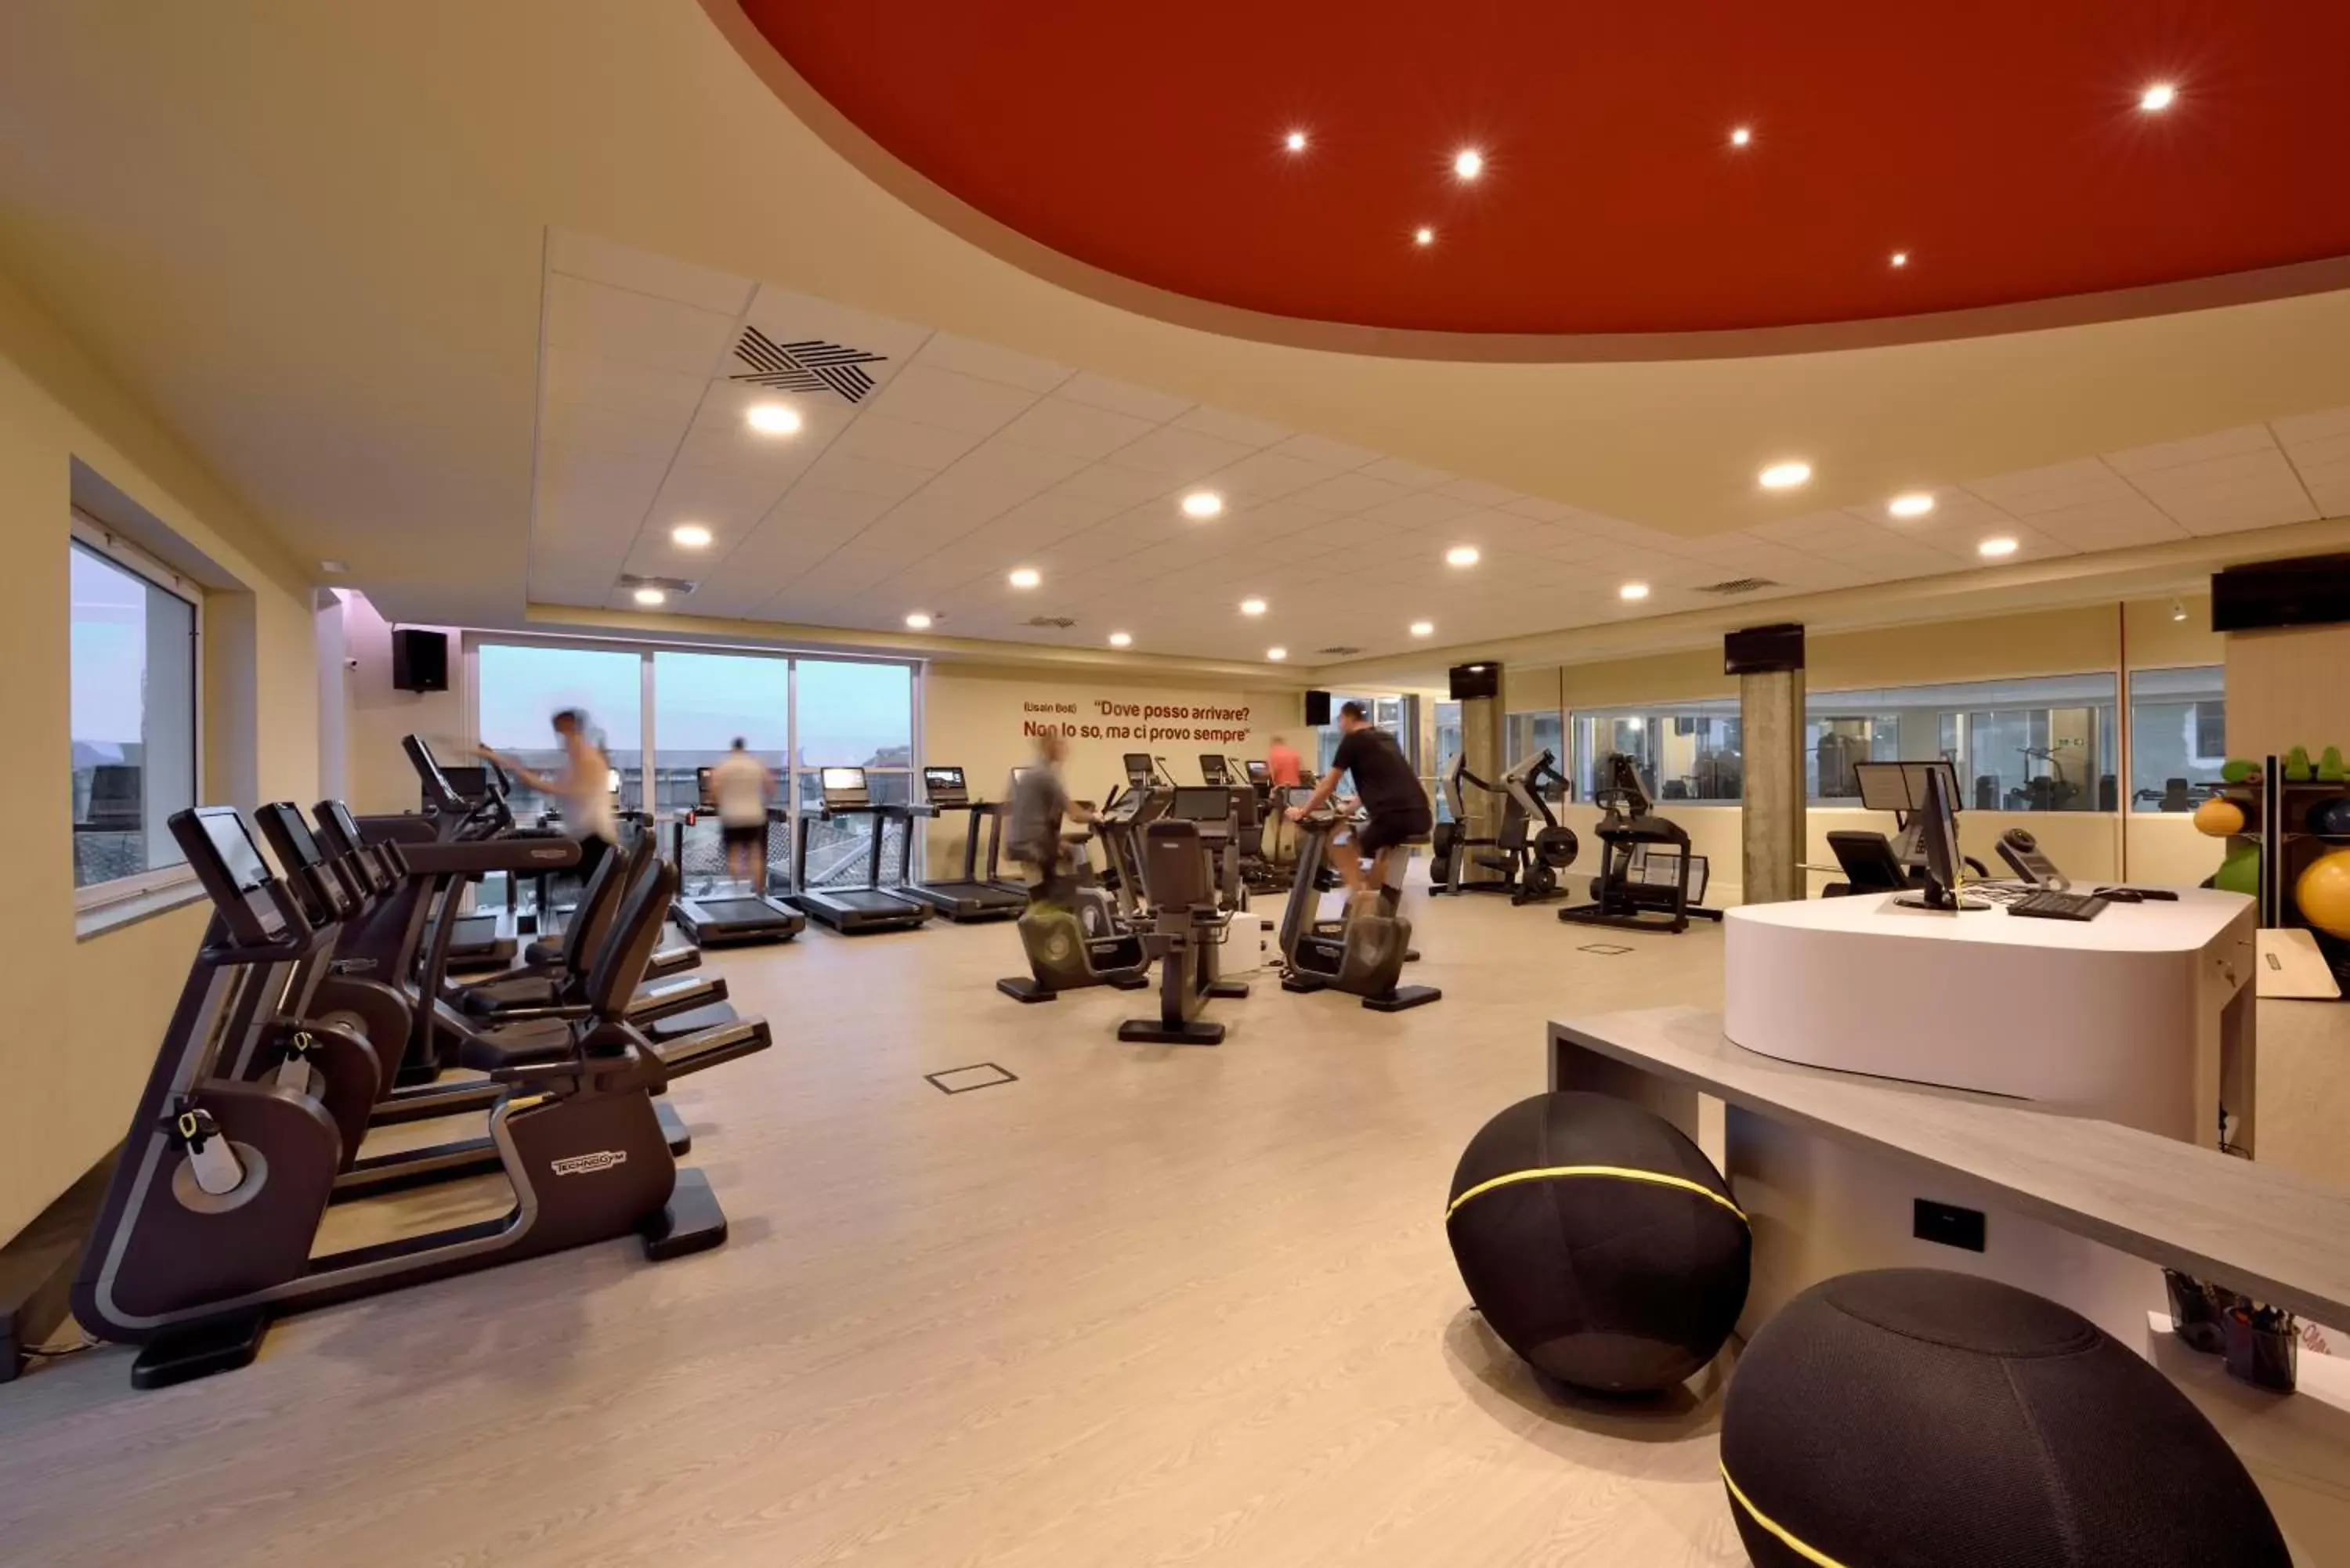 Fitness centre/facilities, Fitness Center/Facilities in Hotel Villa Glicini